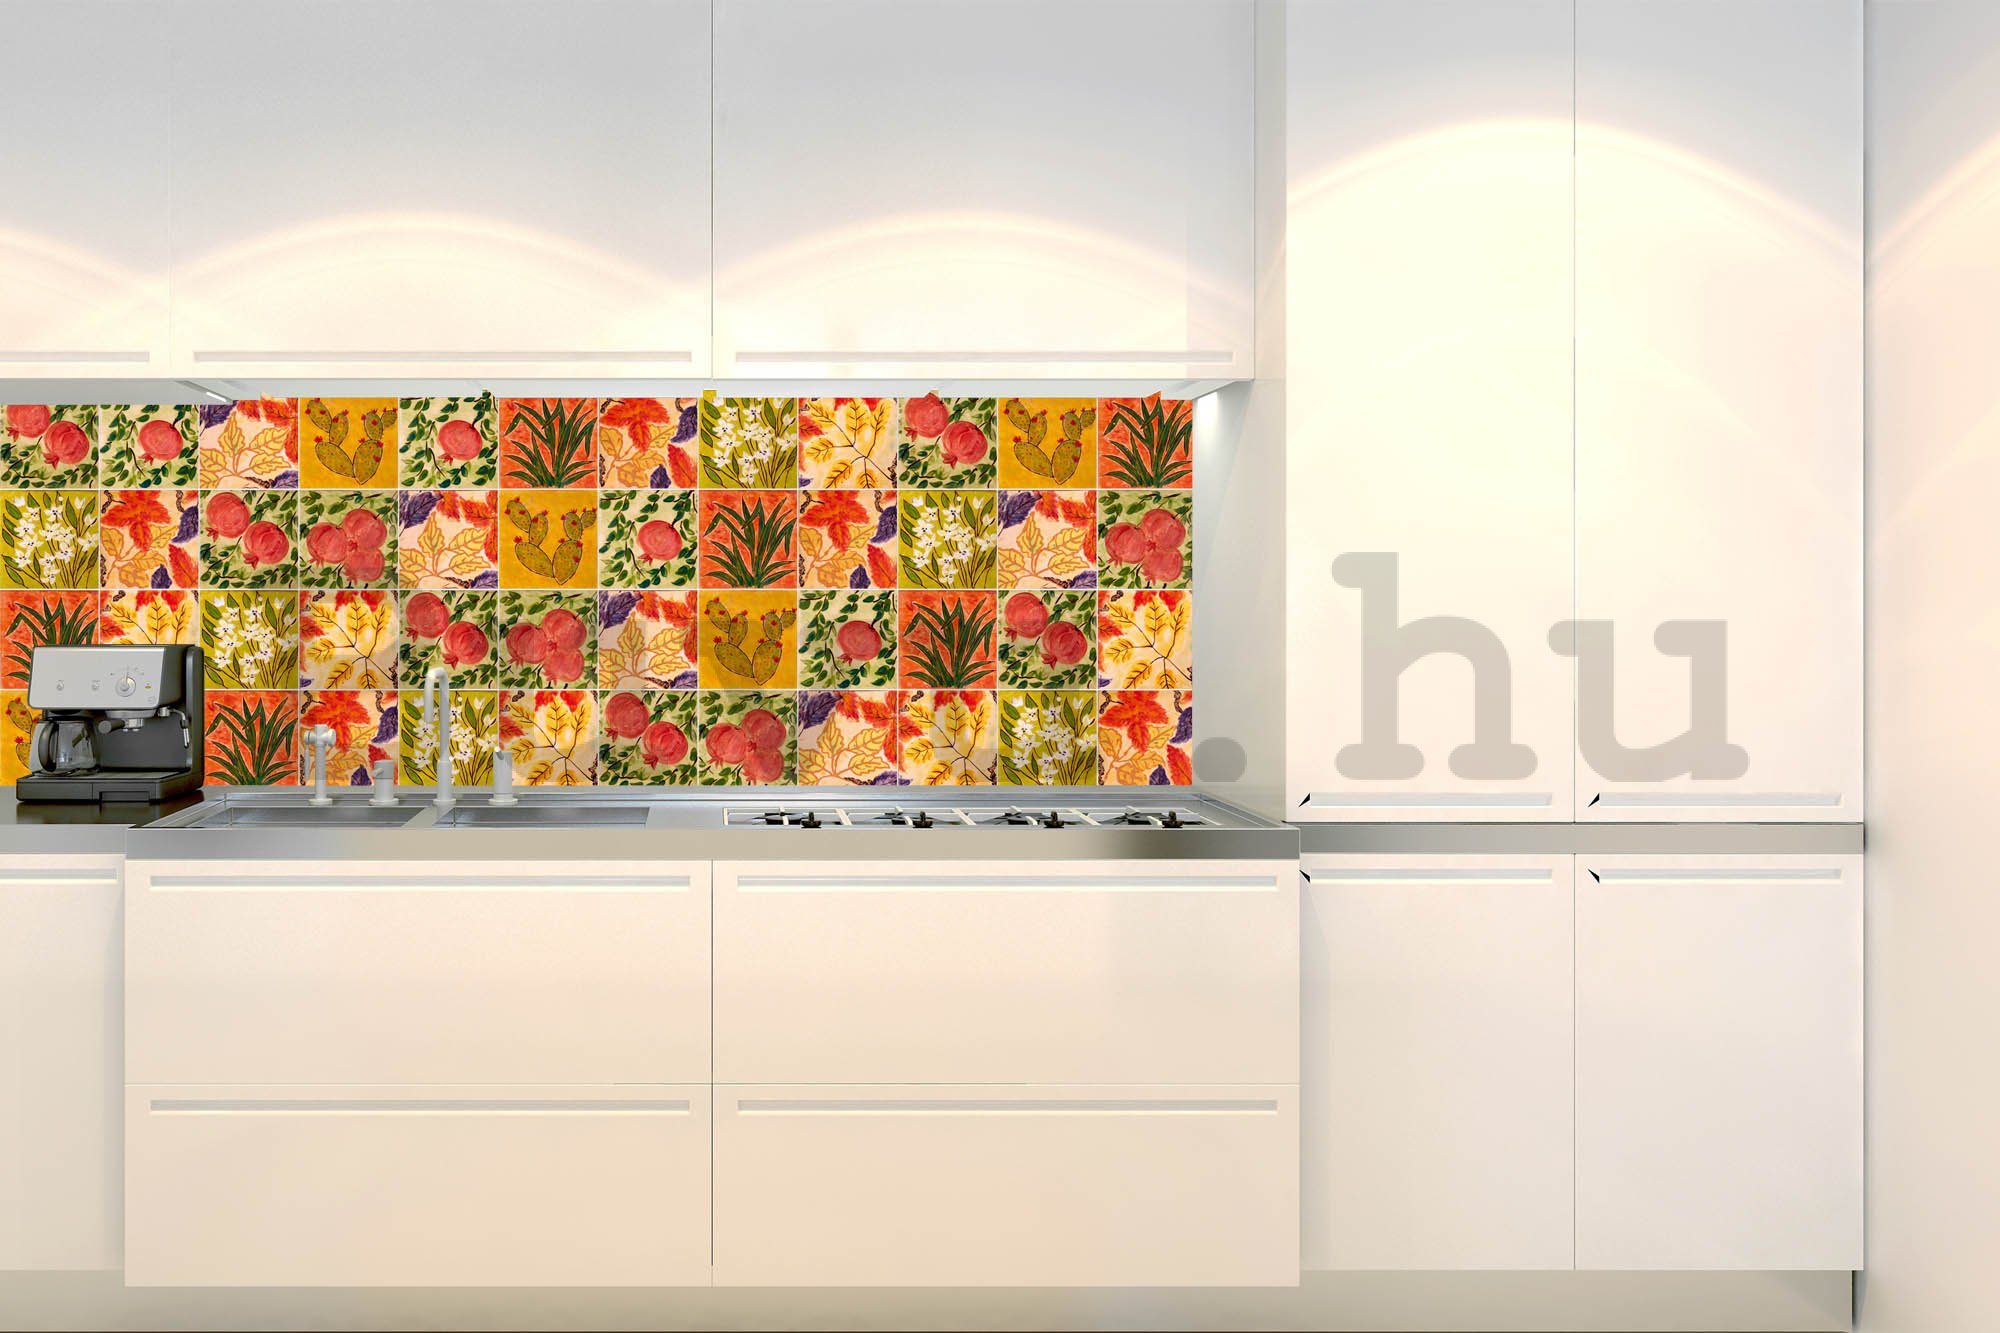 Öntapadós mosható tapéta konyhába - Festett csempe, 180x60 cm